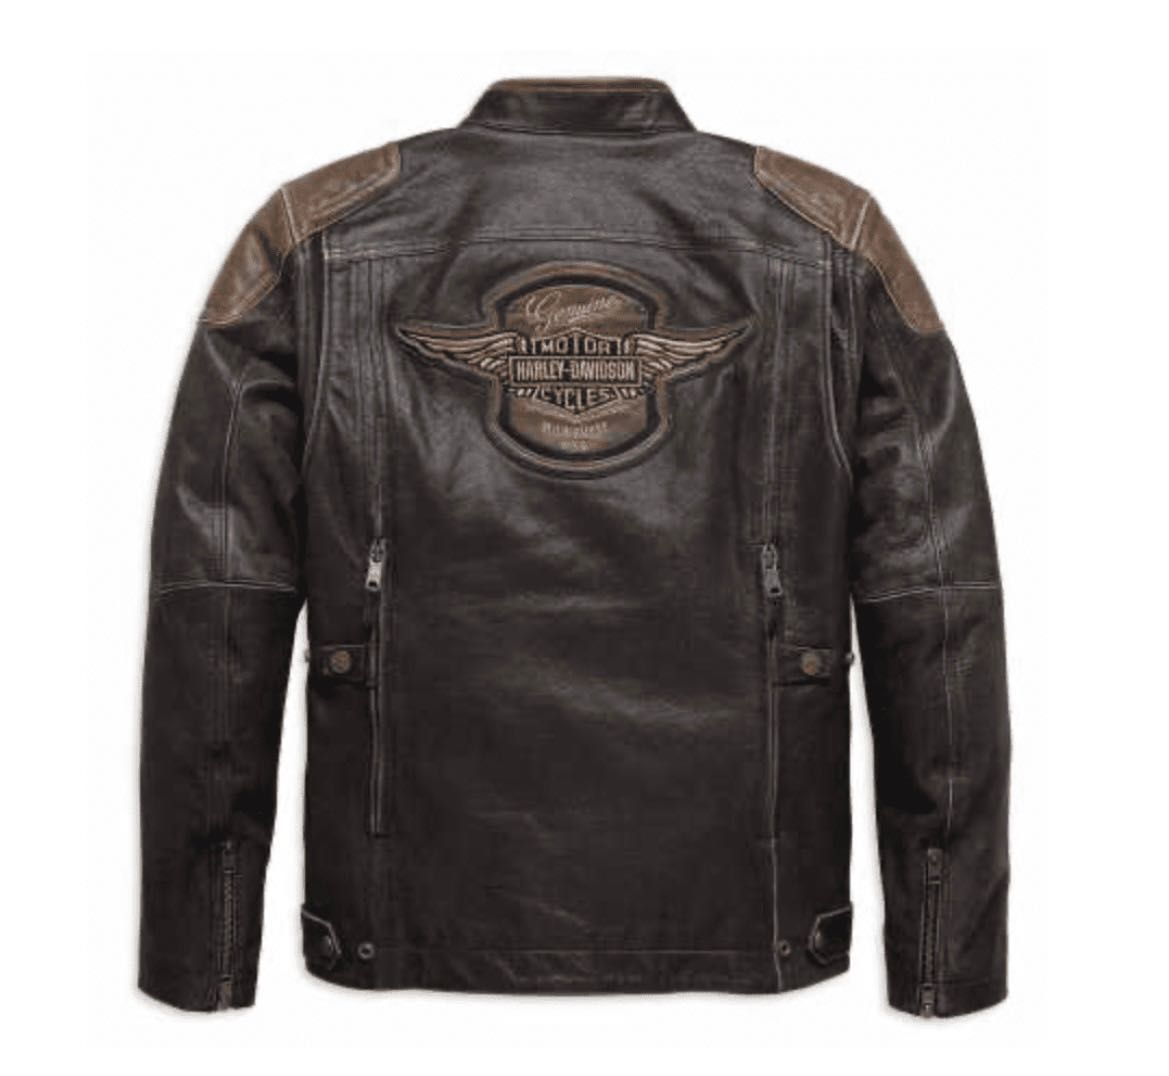 Blusão couro Harley Davidson original